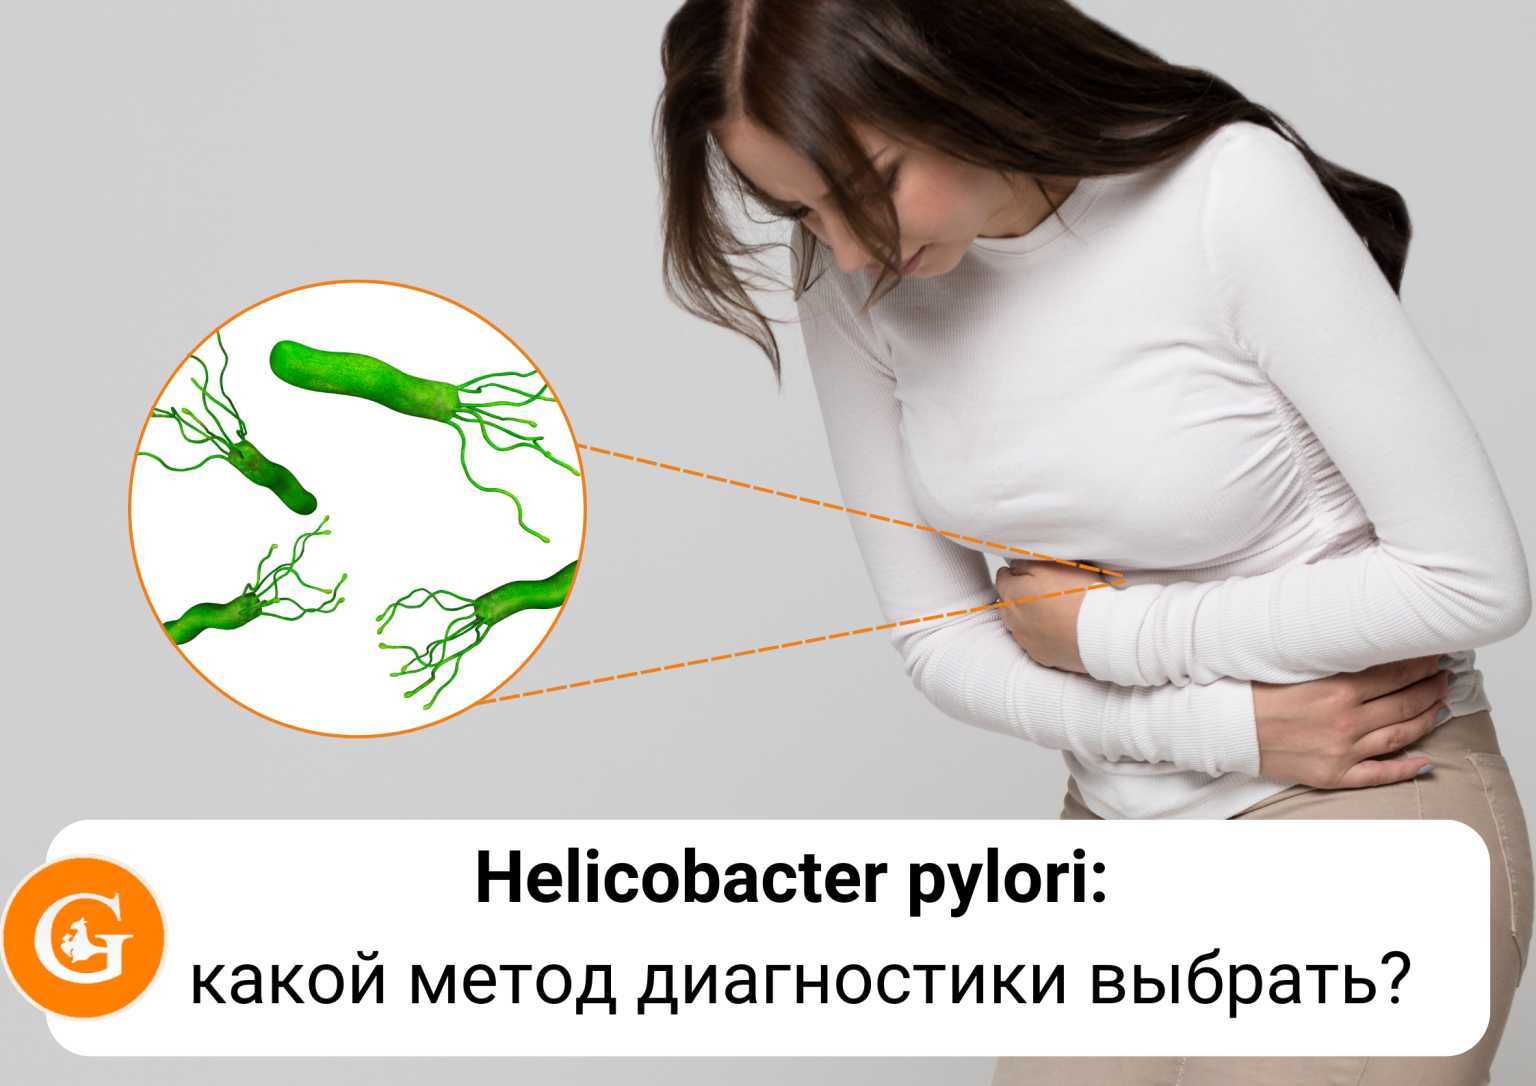 Se puede tener sibo y helicobacter pylori